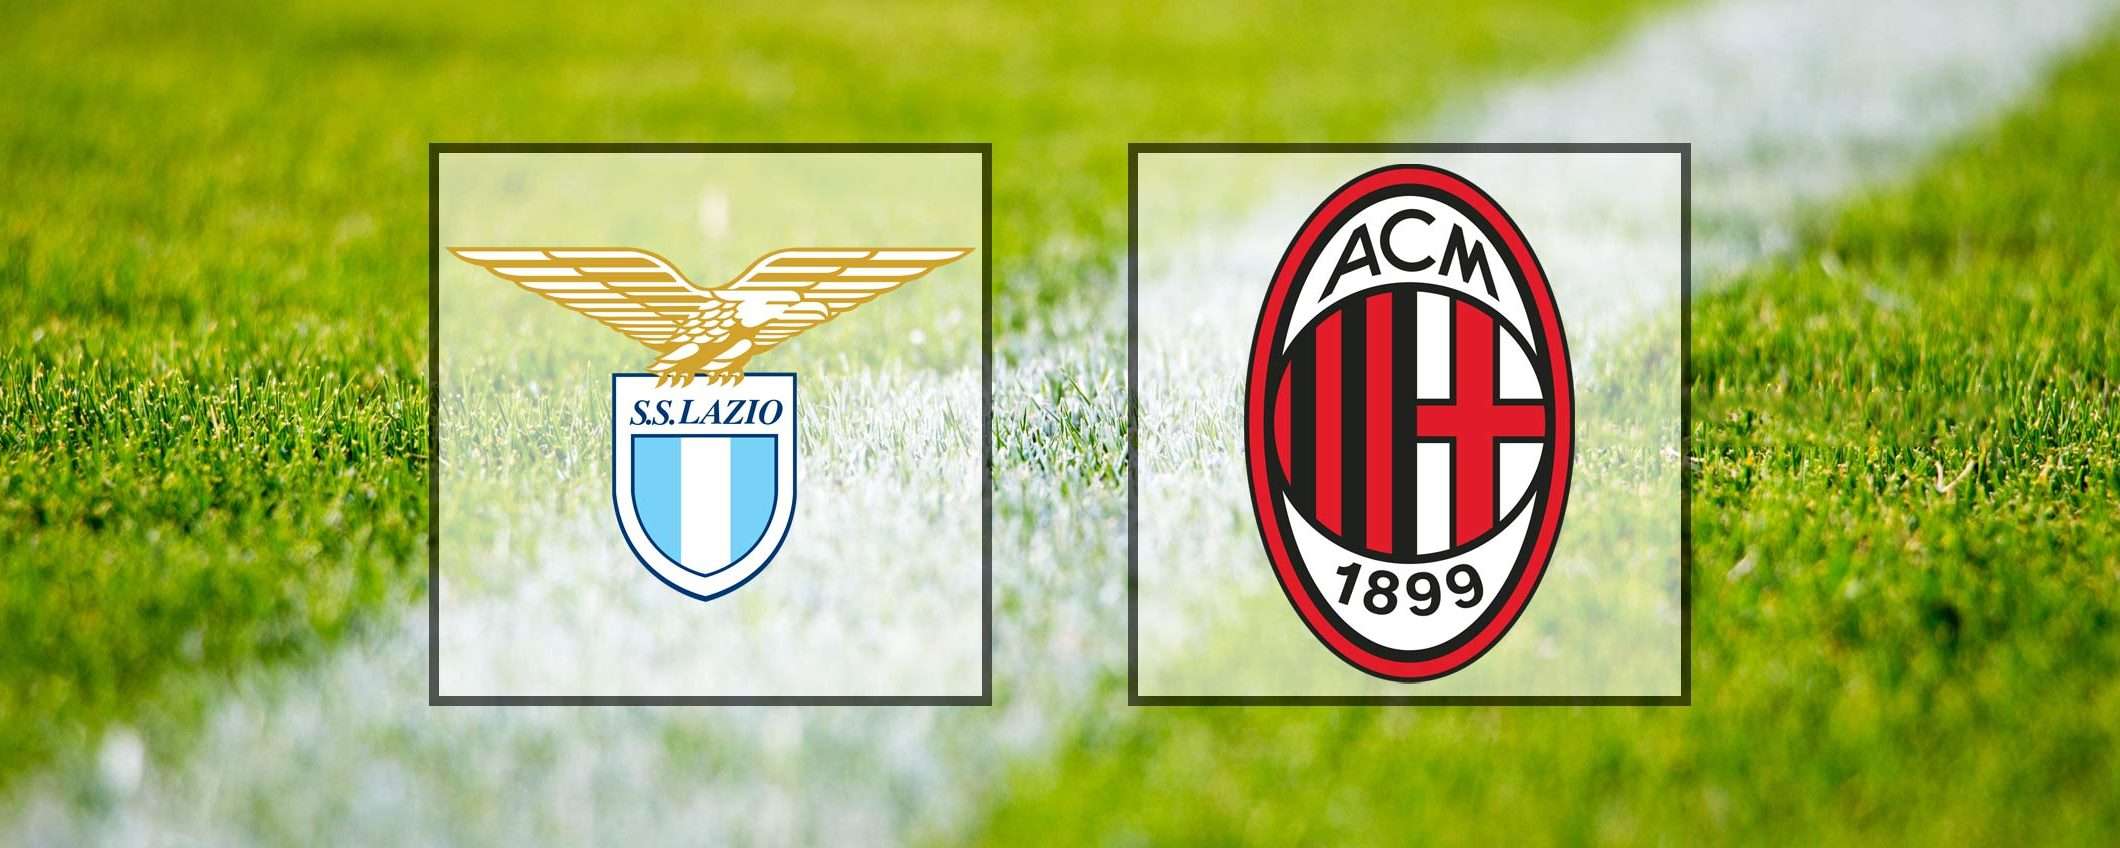 Come vedere Lazio-Milan in streaming